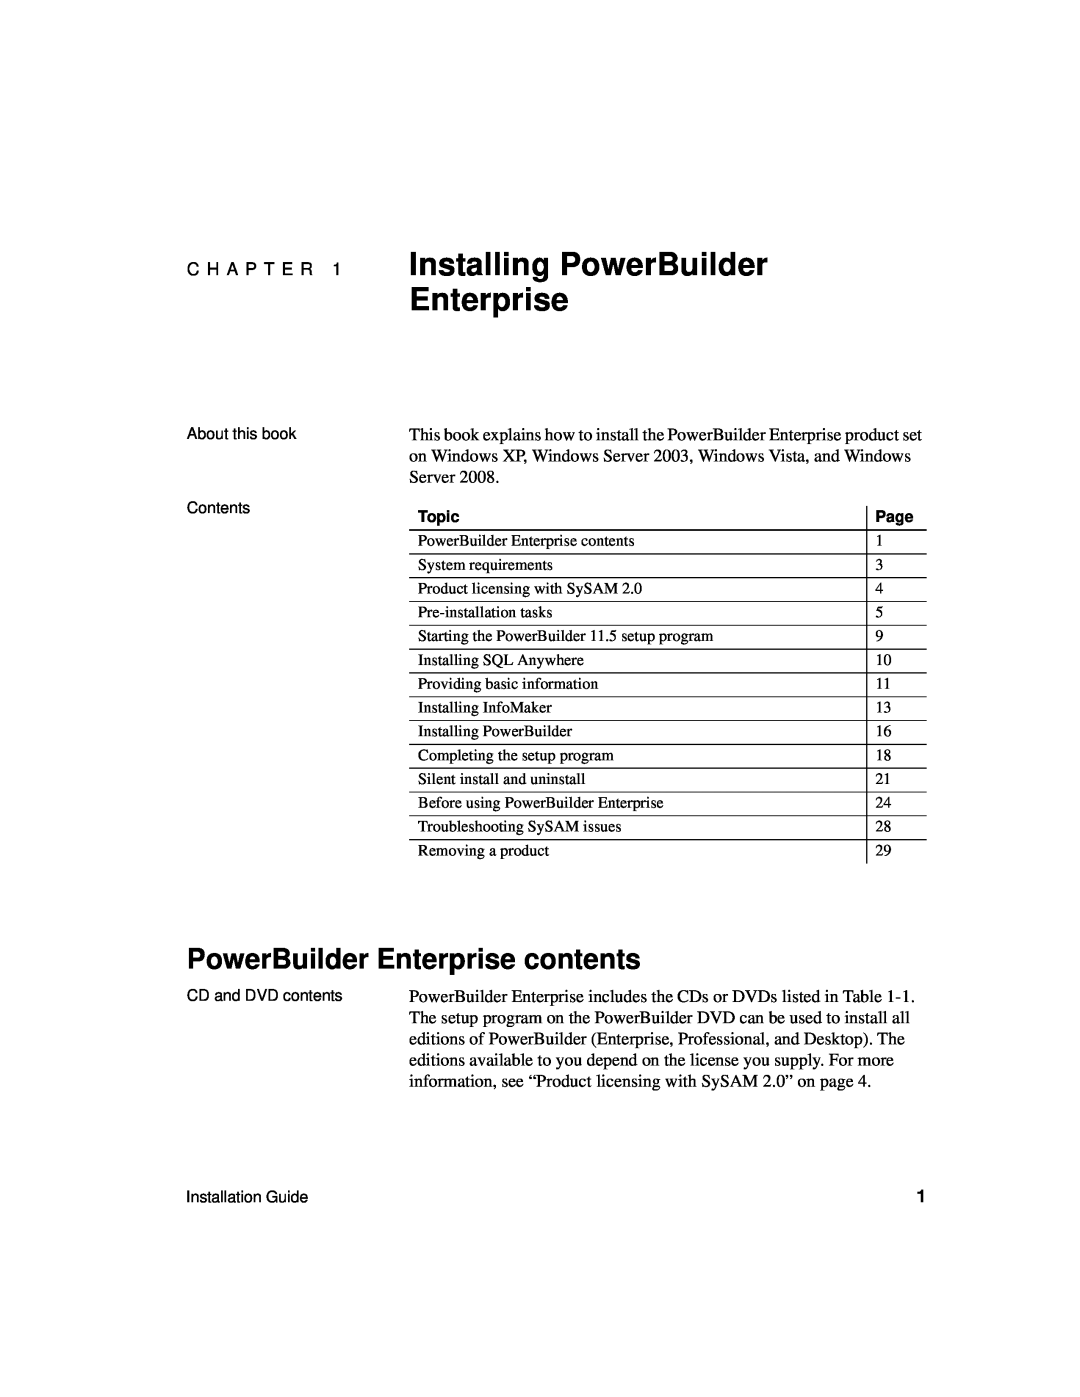 Sybase 6131765115041SS manual Installing PowerBuilder Enterprise, PowerBuilder Enterprise contents 